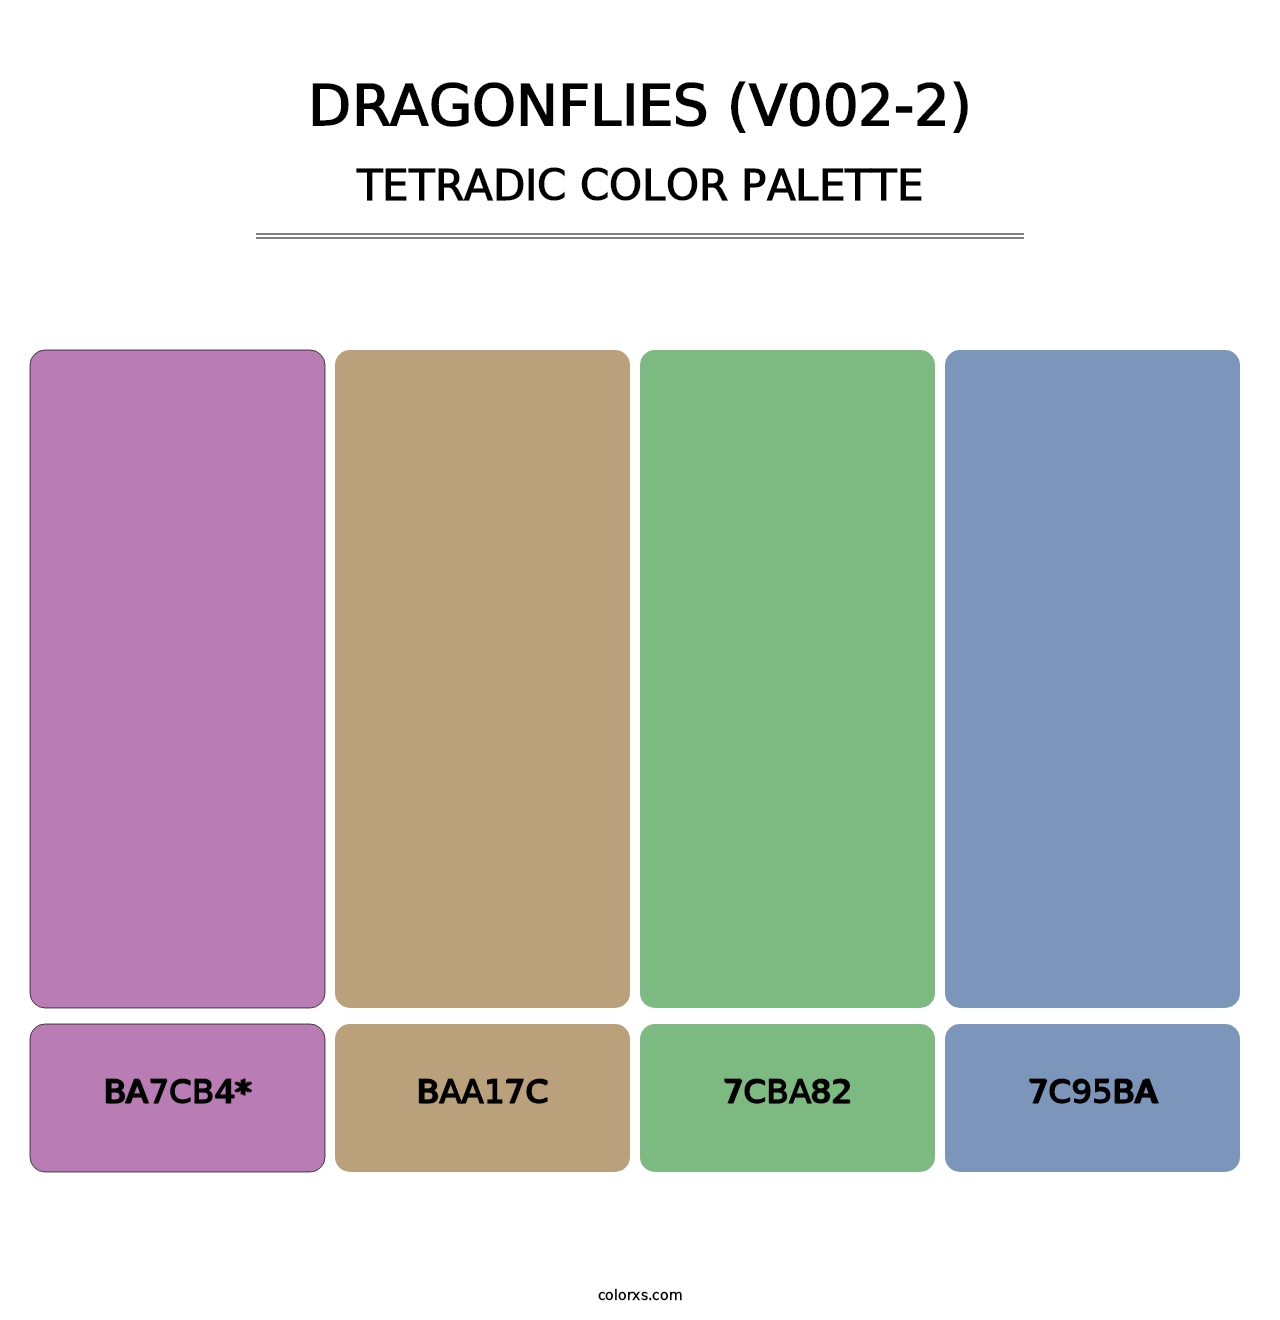 Dragonflies (V002-2) - Tetradic Color Palette